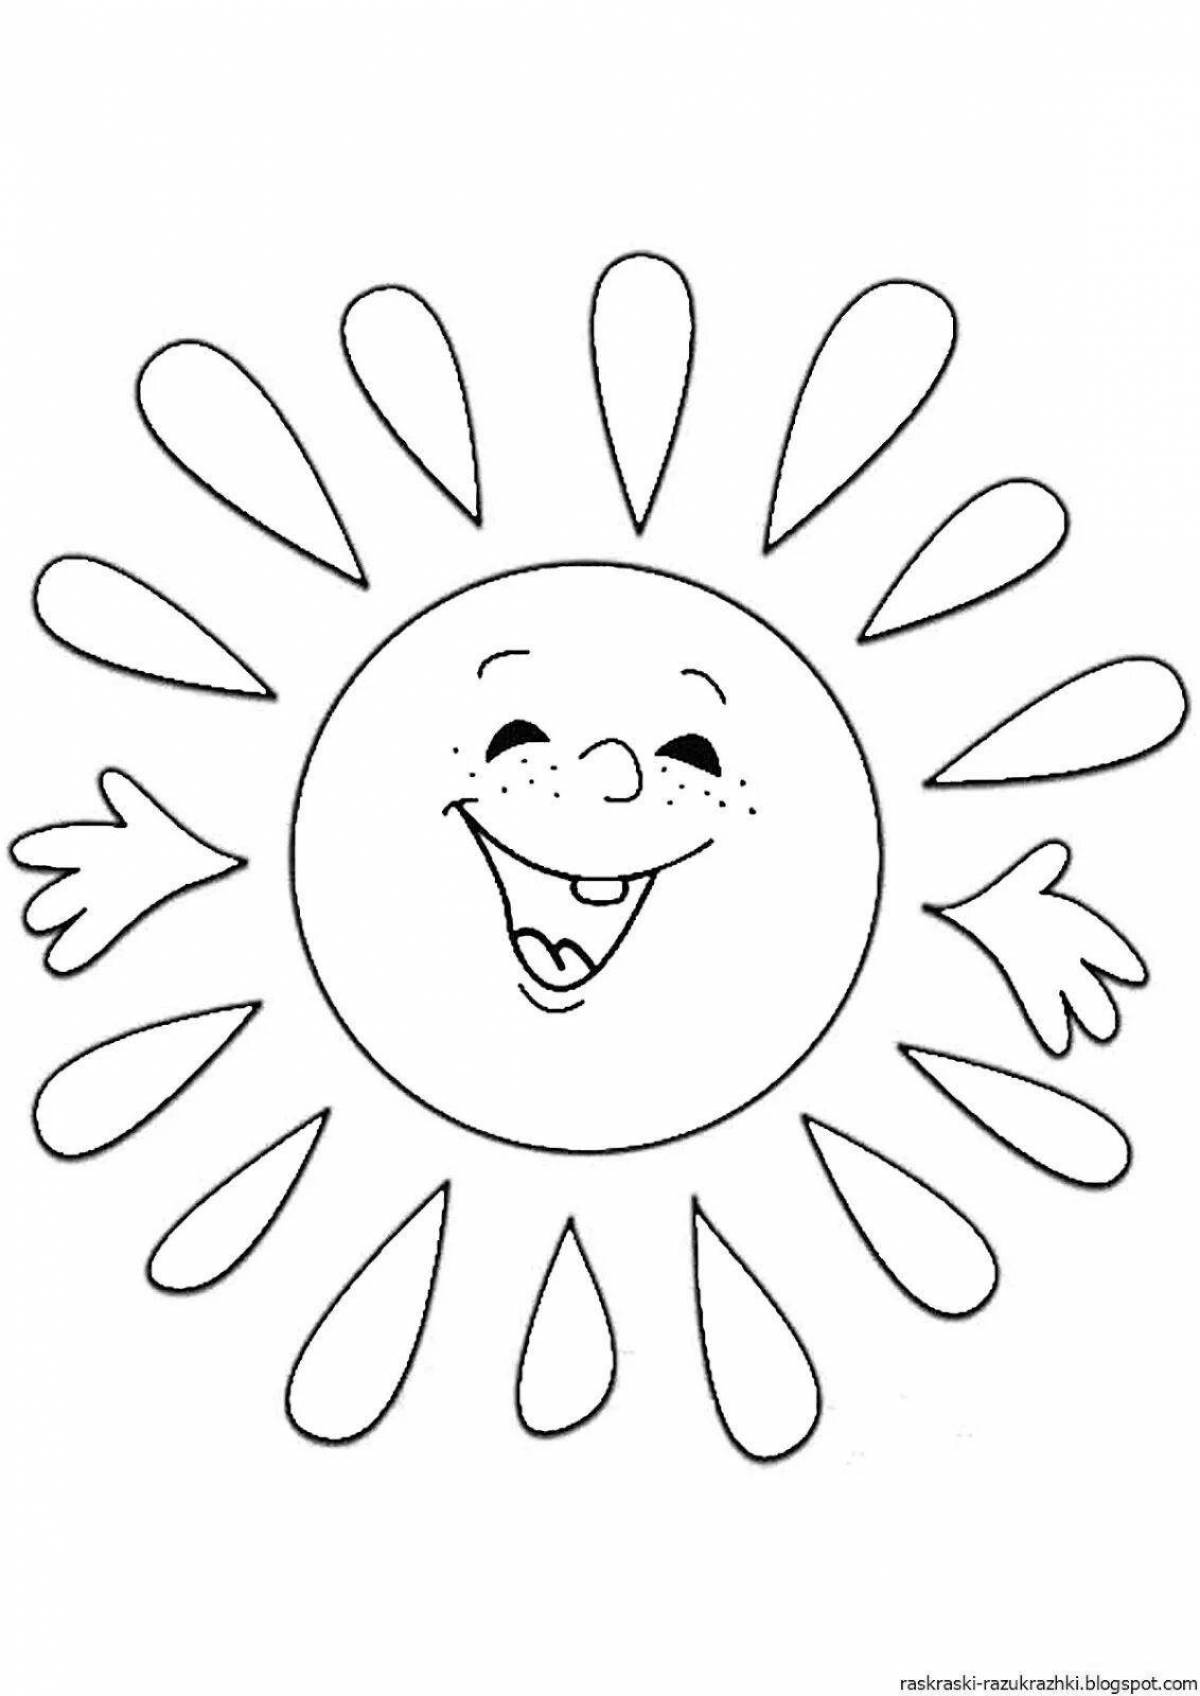 Радостная раскраска солнце для детей 4-5 лет